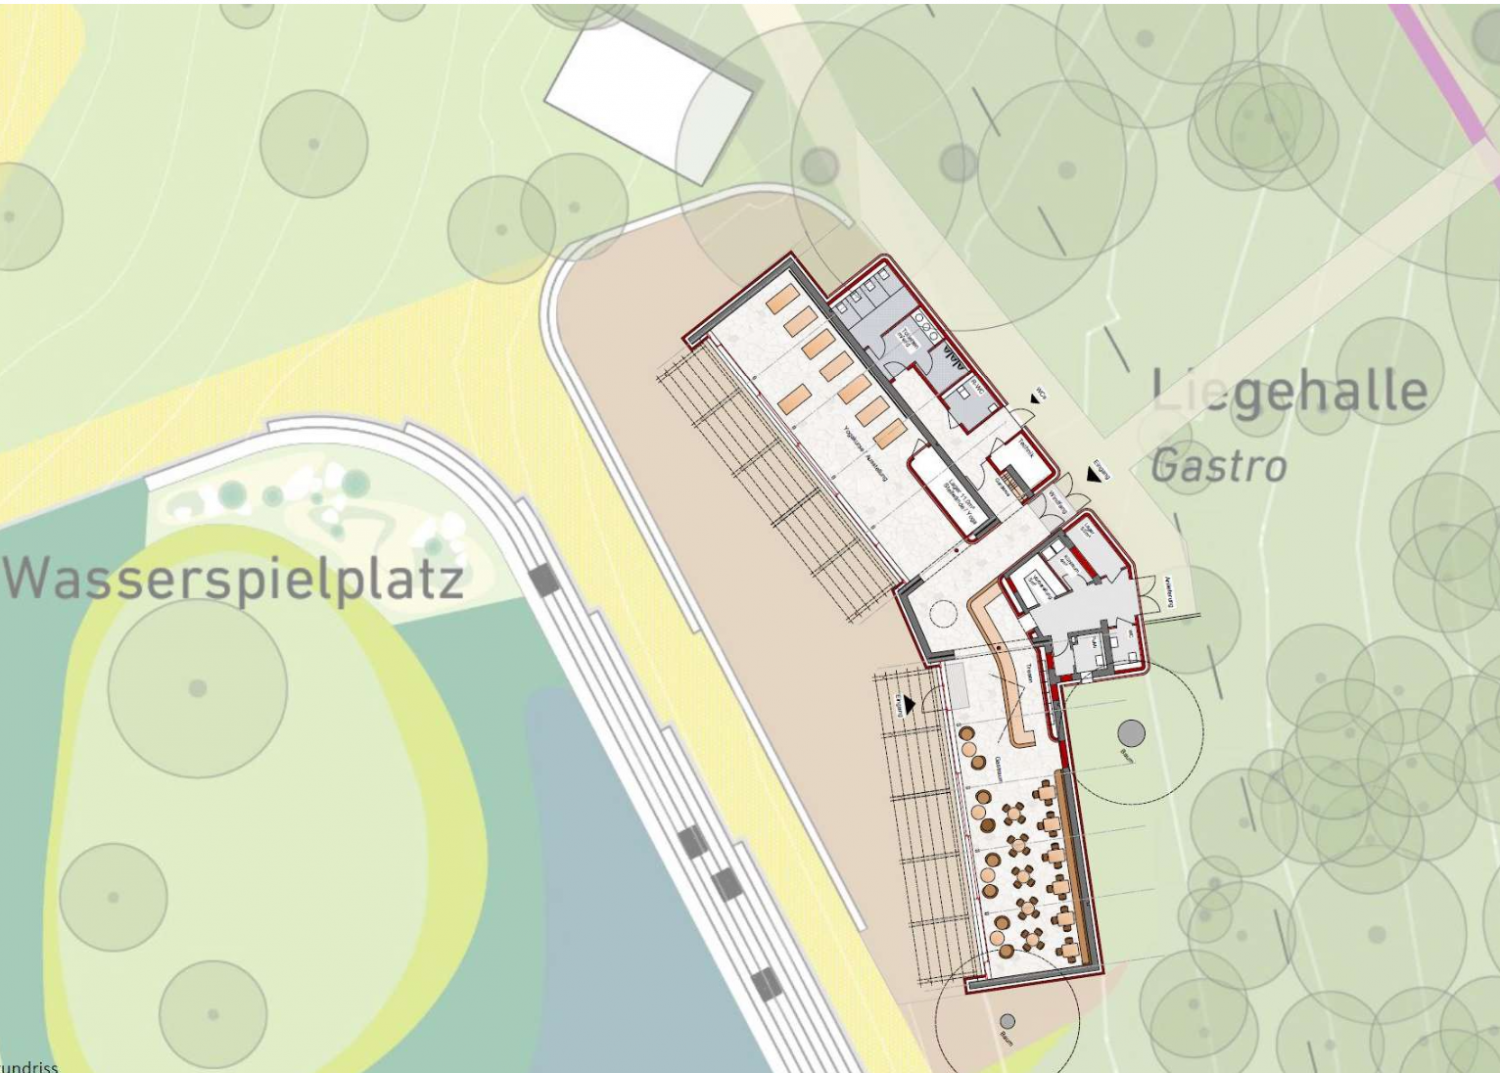 Die Sanierung der Liegehalle im Bad Nenndorfer Kurpark soll möglichst zeitnah starten. Der Wasserspielplatz ist Teil der Planungen für die Umgestaltungen im Rahmen der Landesgartenschau 2026.